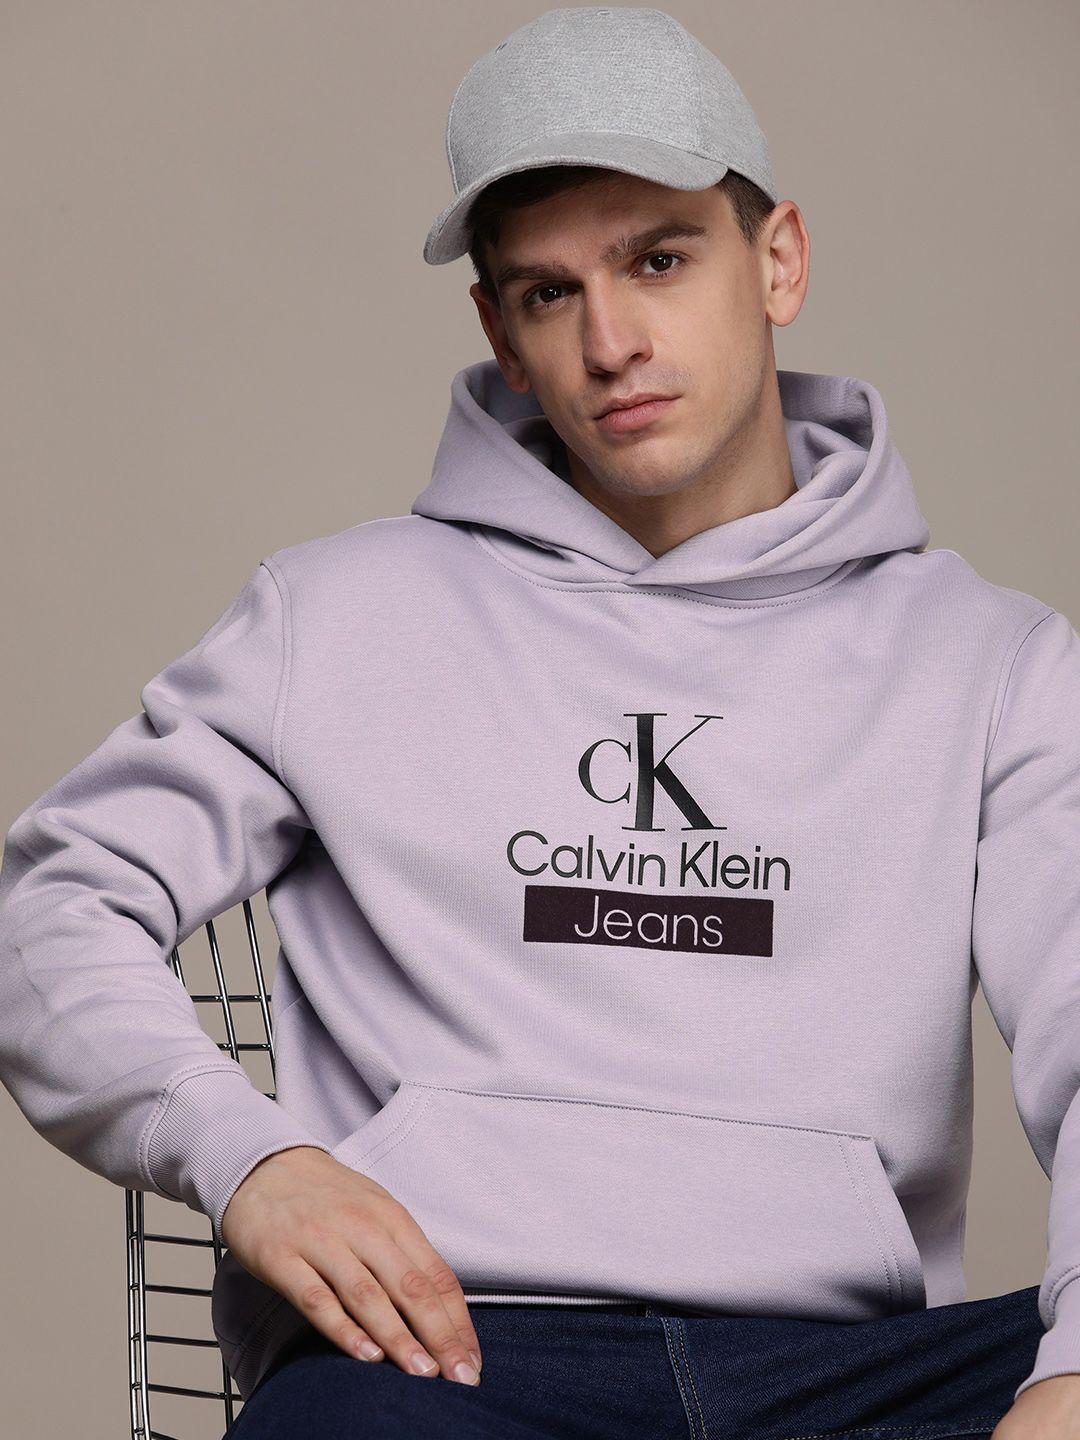 calvin klein jeans brand logo printed hooded sweatshirt